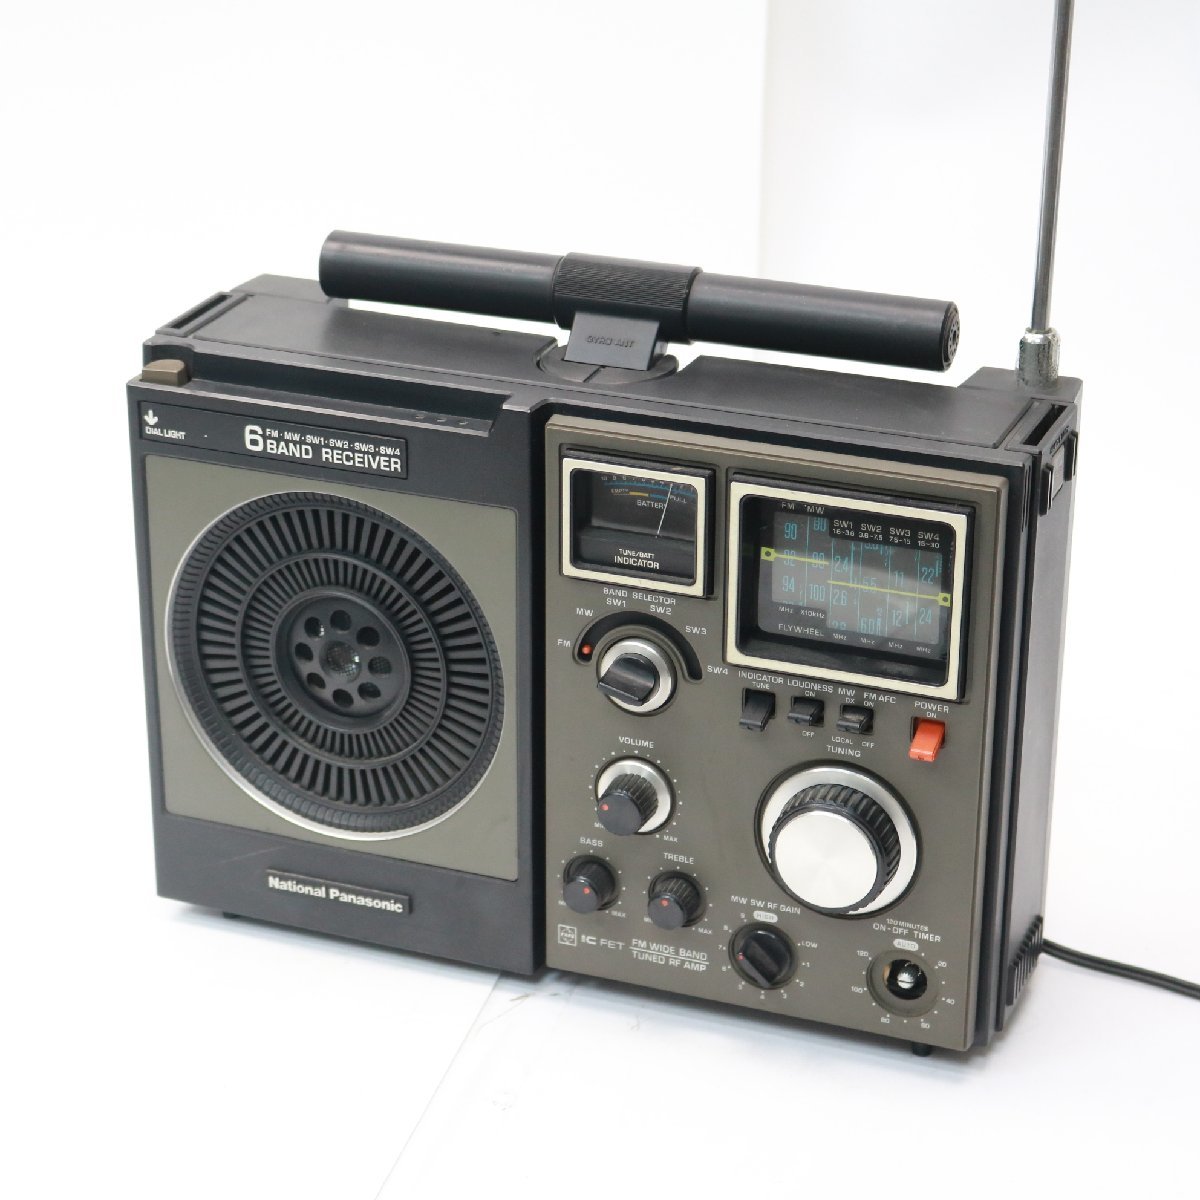 東京都狛江市にて ナショナル パナソニック レシーバー ラジオ RF-1180  を出張買取させて頂きました。